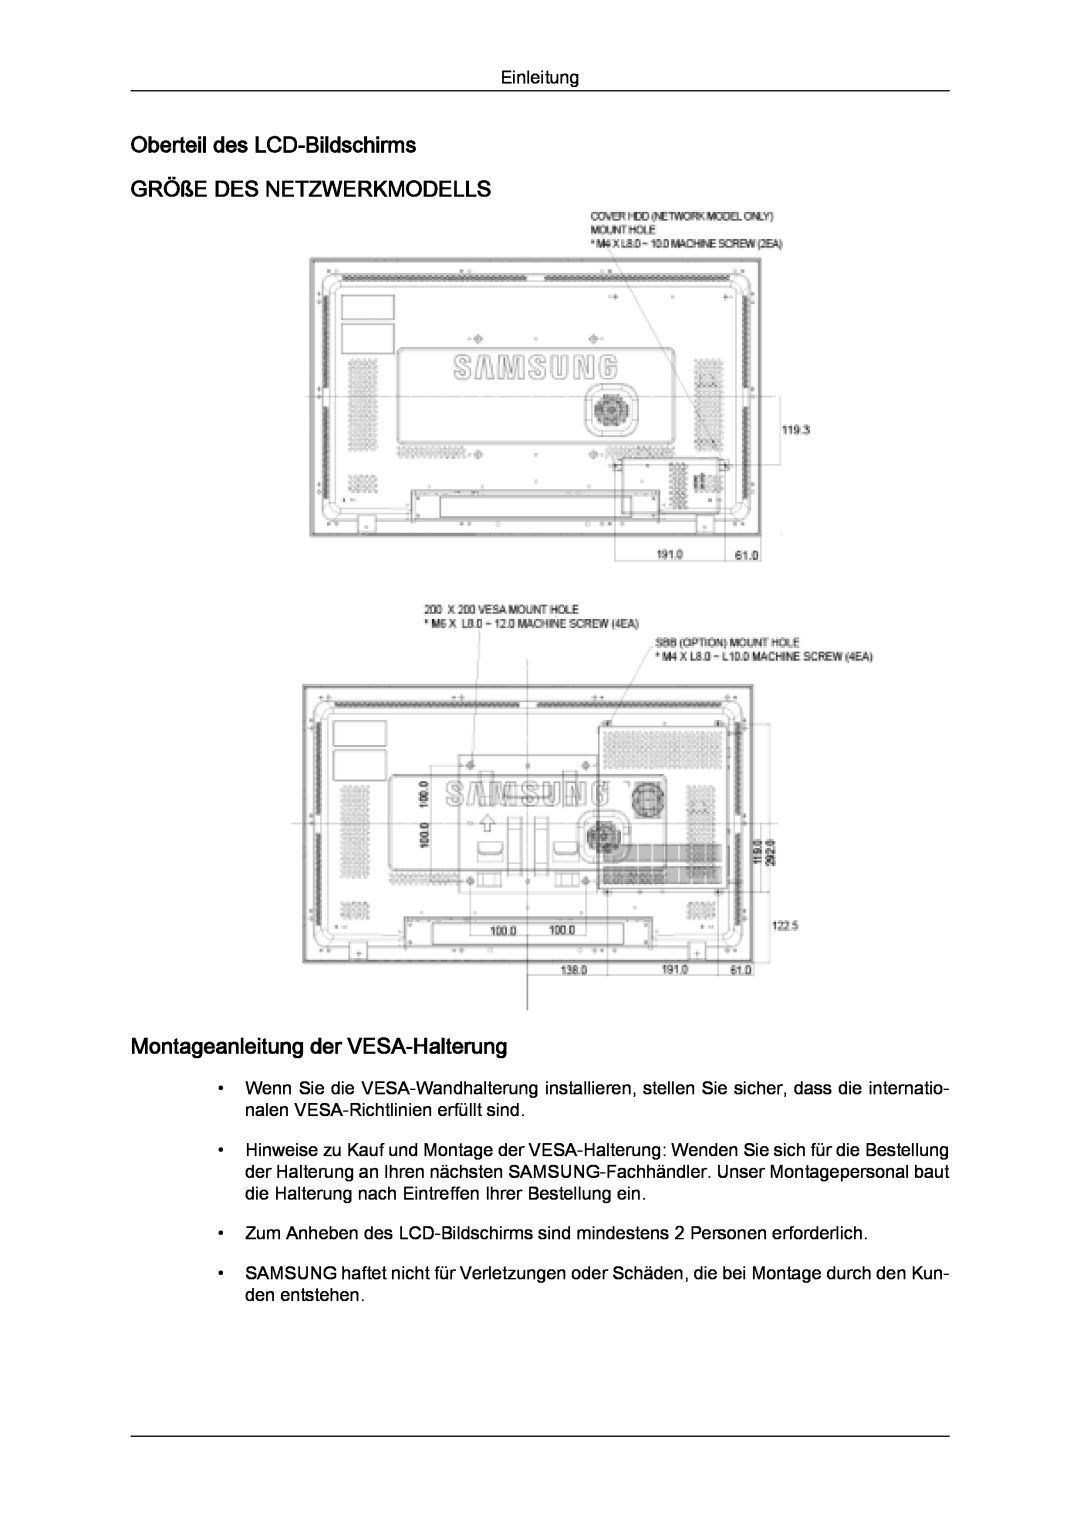 Samsung LH32MGQPBC/EN manual Oberteil des LCD-Bildschirms GRÖßE DES NETZWERKMODELLS, Montageanleitung der VESA-Halterung 